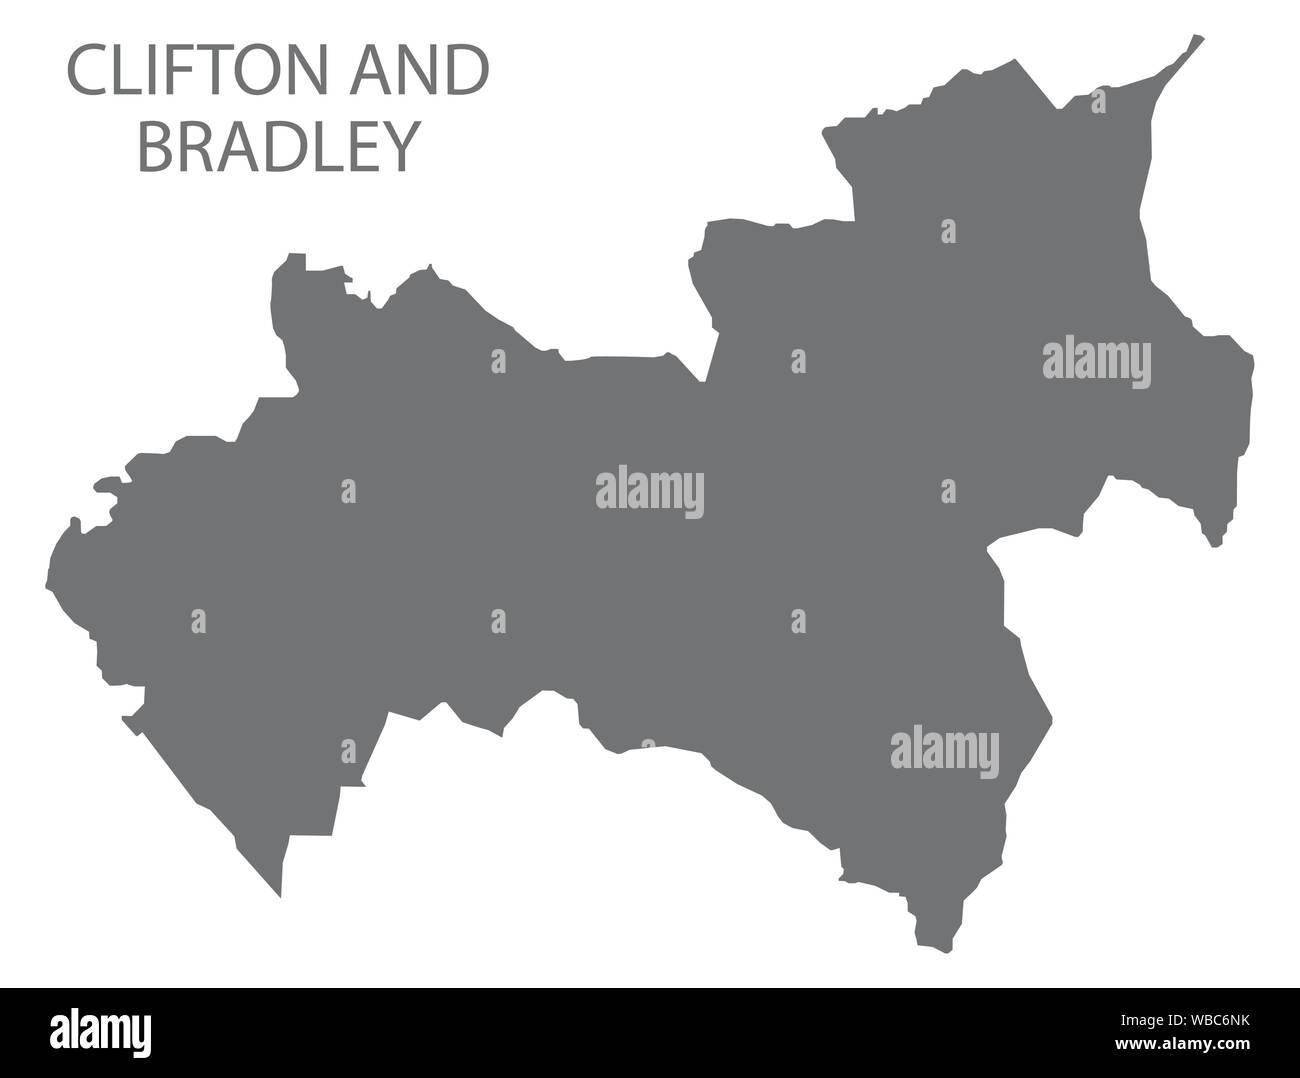 Clifton und Bradley grau ward Karte von Derbyshire Dales District im East Midlands England Großbritannien Stock Vektor